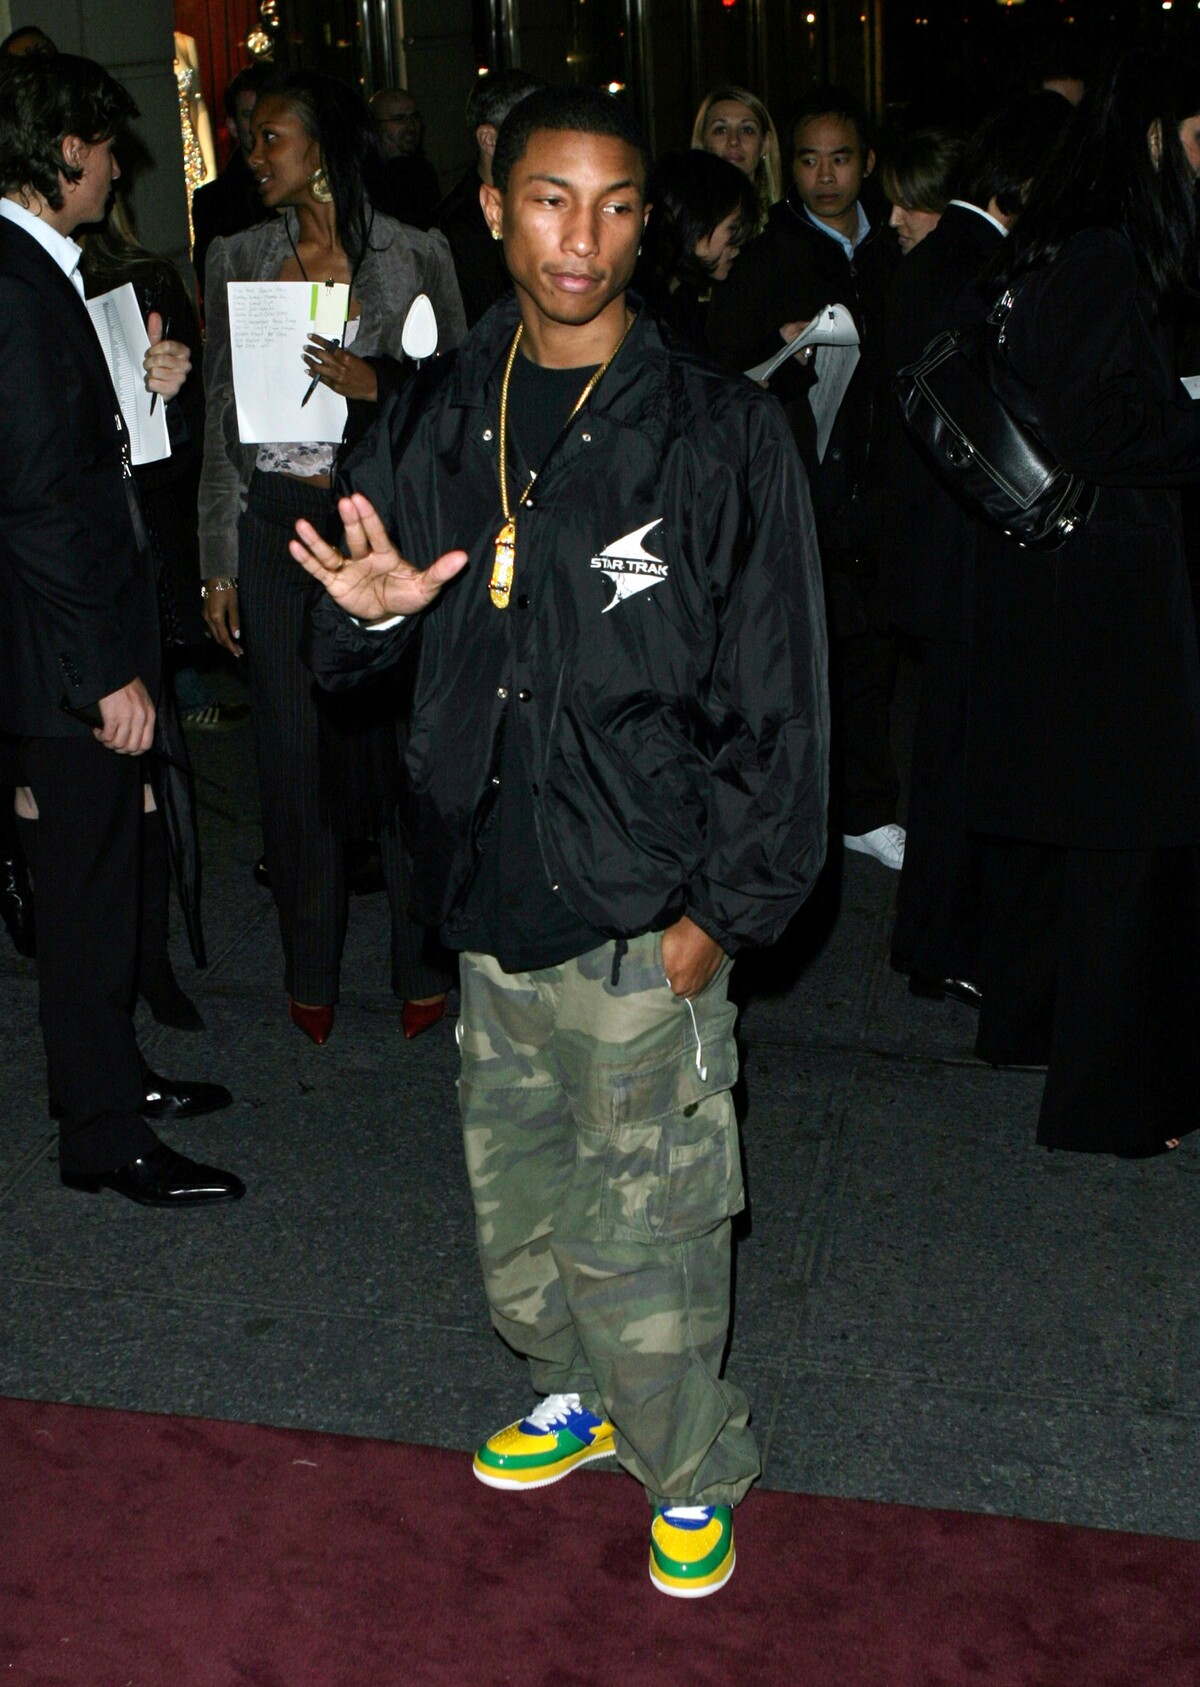 Pharrell Williams pred obchodom Bergdorf Goodman v centre Manhattanu v roku 2003.